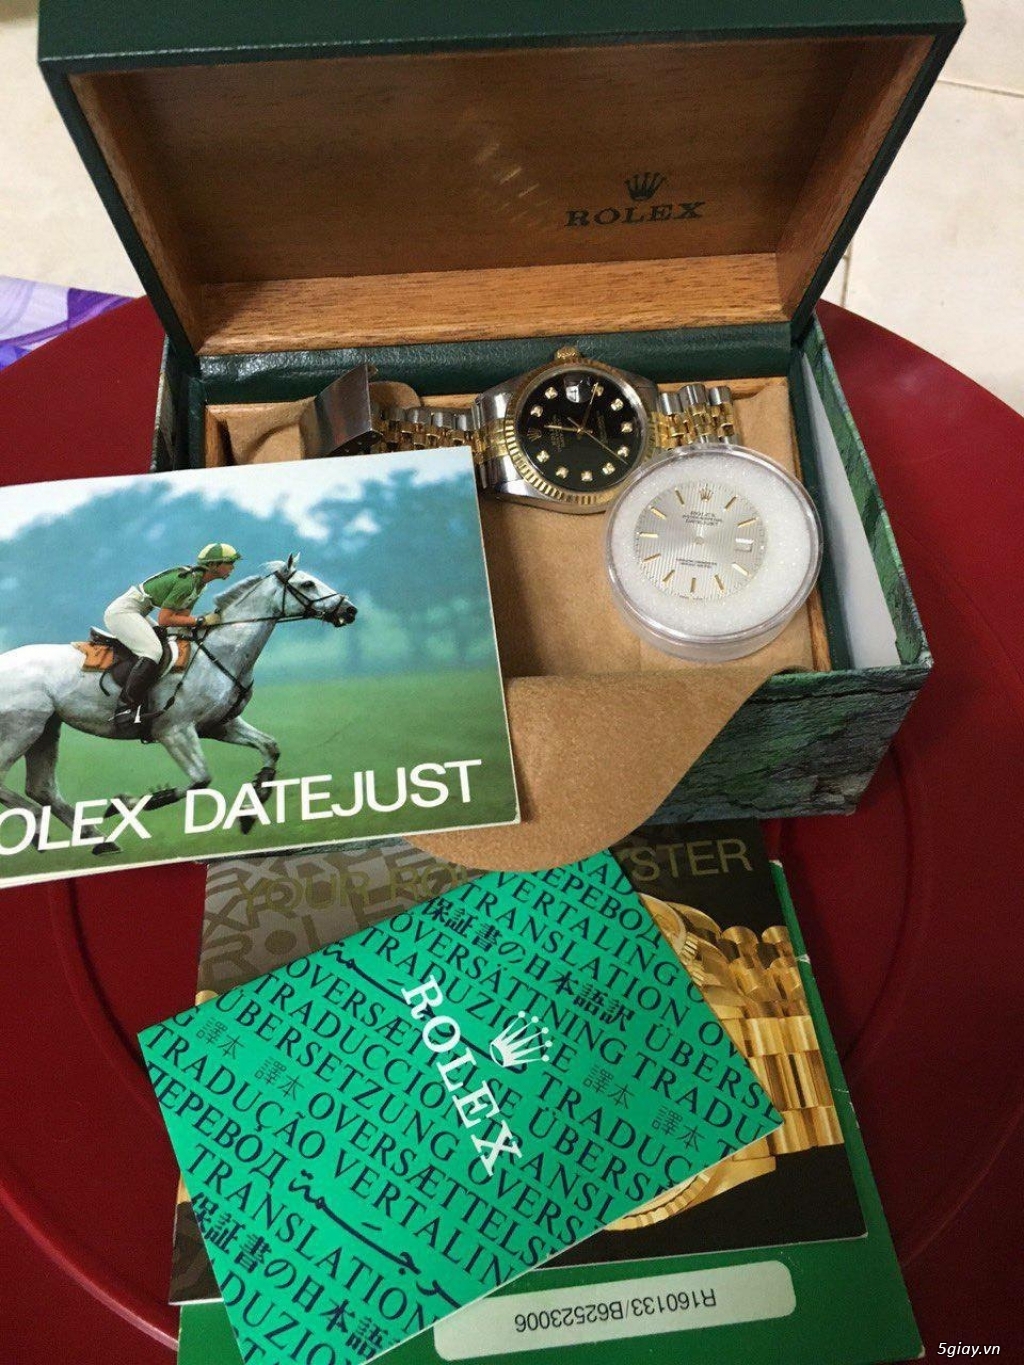 Rolex R1601**** chronometer 86***** Diameter 41mm - 1